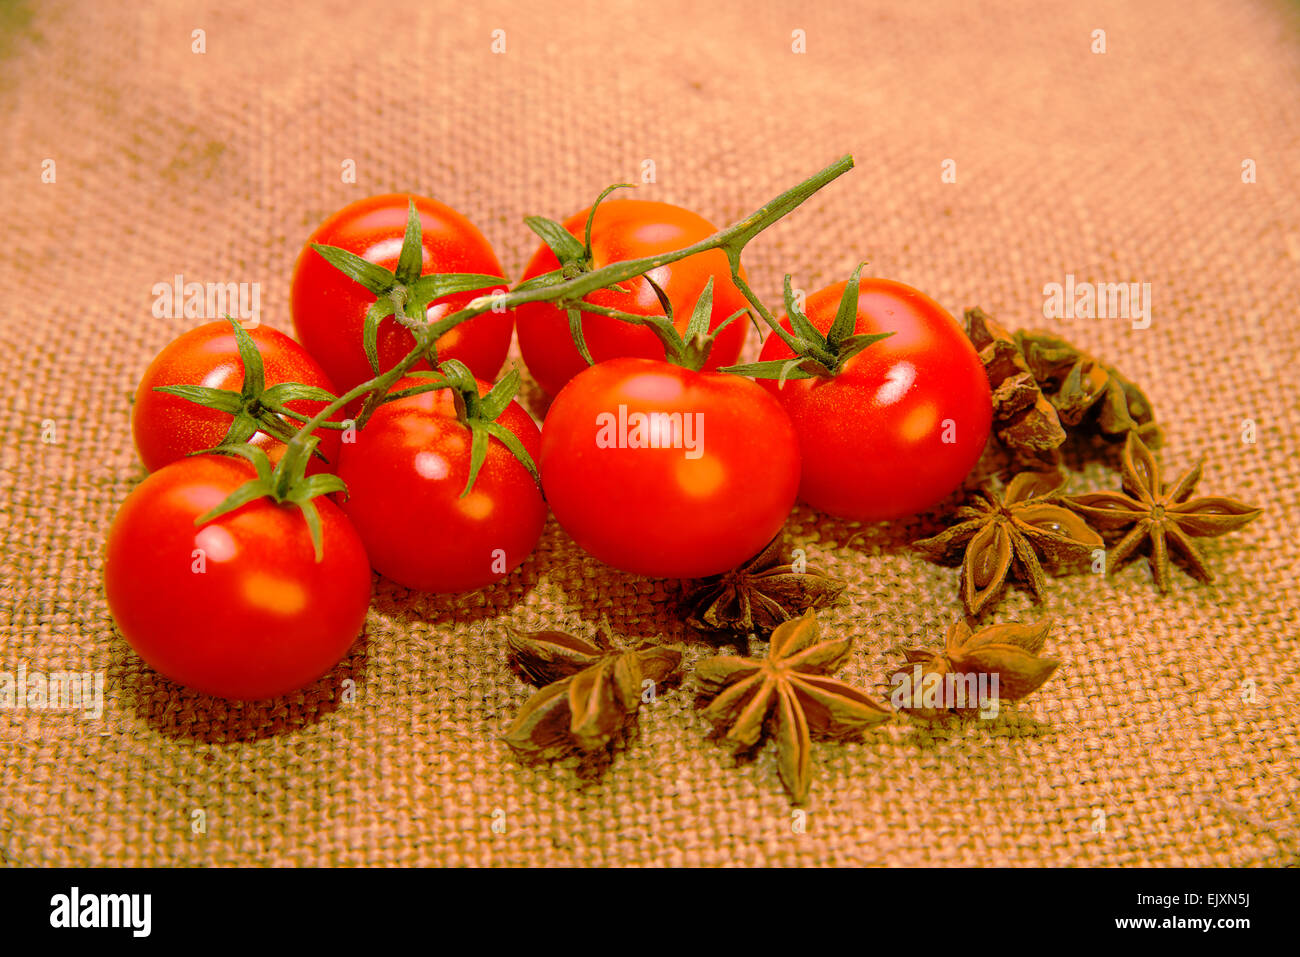 Un sacco rossi pomodori ciliegini e anice stellato frutti sul panno vecchio Foto Stock